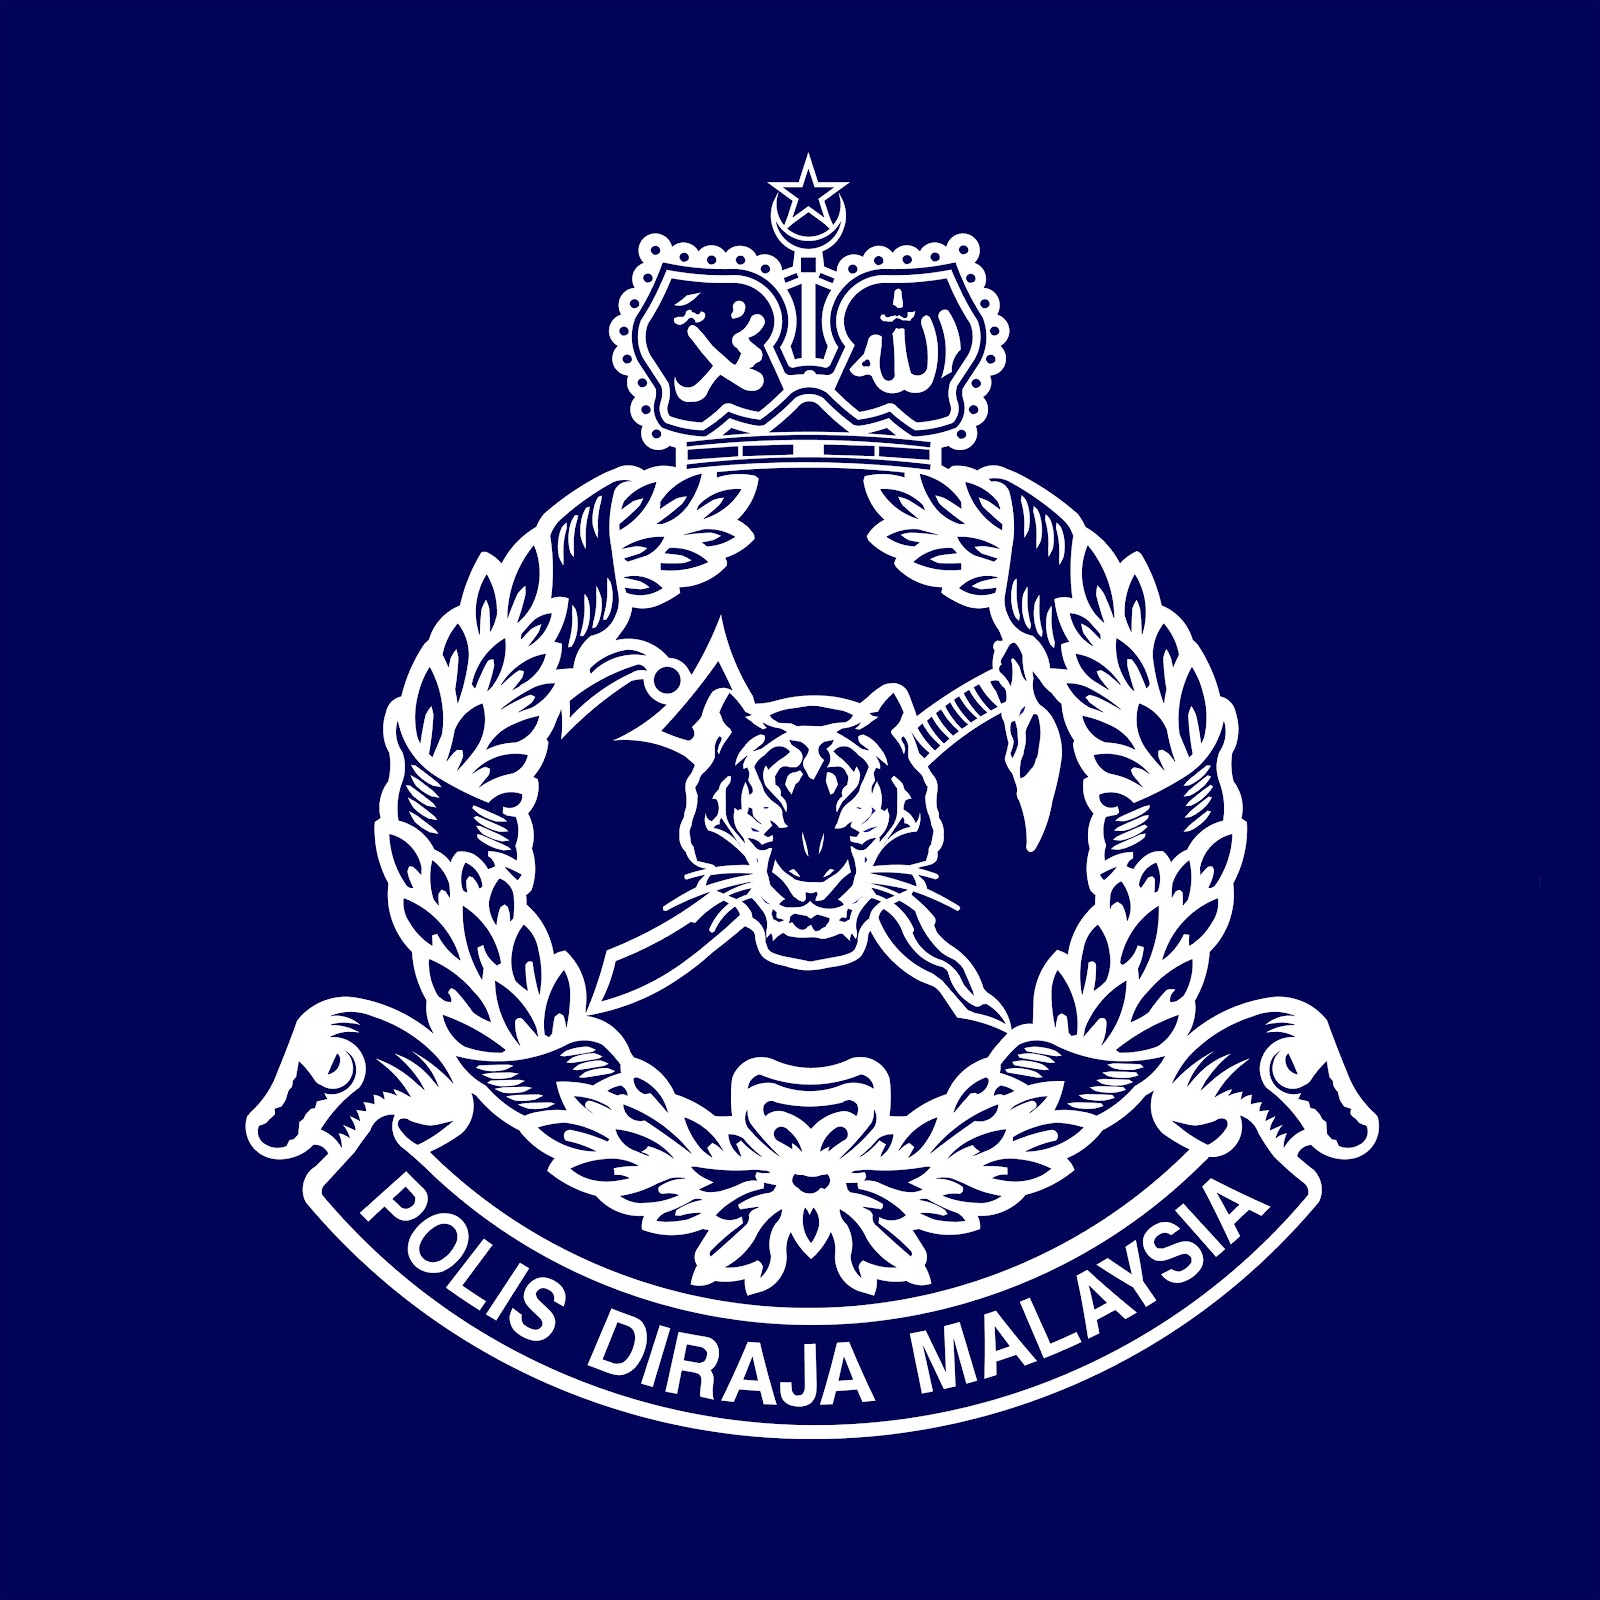 Polis DiRaja Malaysia PDRM 